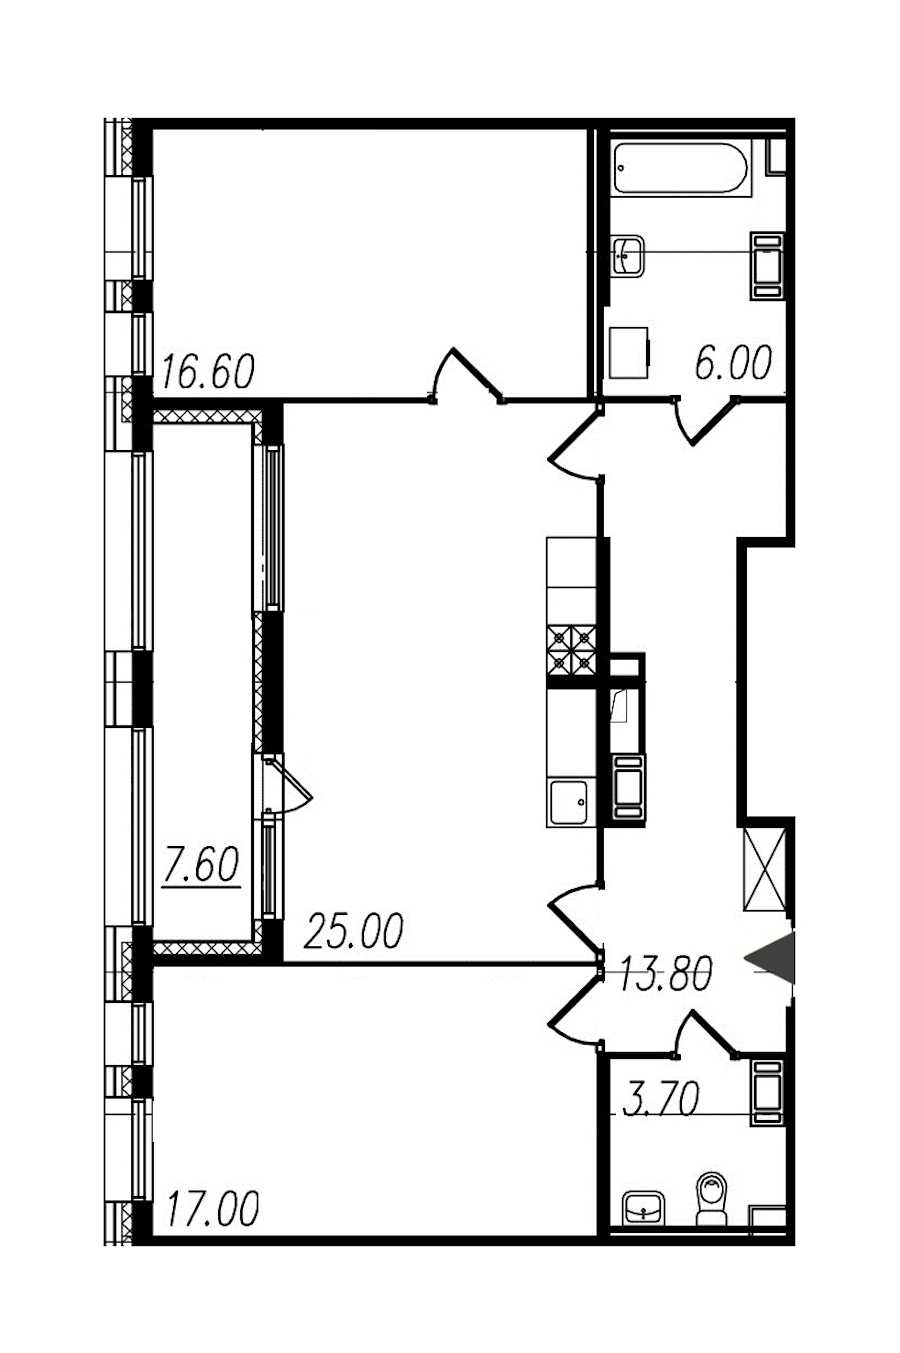 Двухкомнатная квартира в : площадь 82.1 м2 , этаж: 4 – купить в Санкт-Петербурге